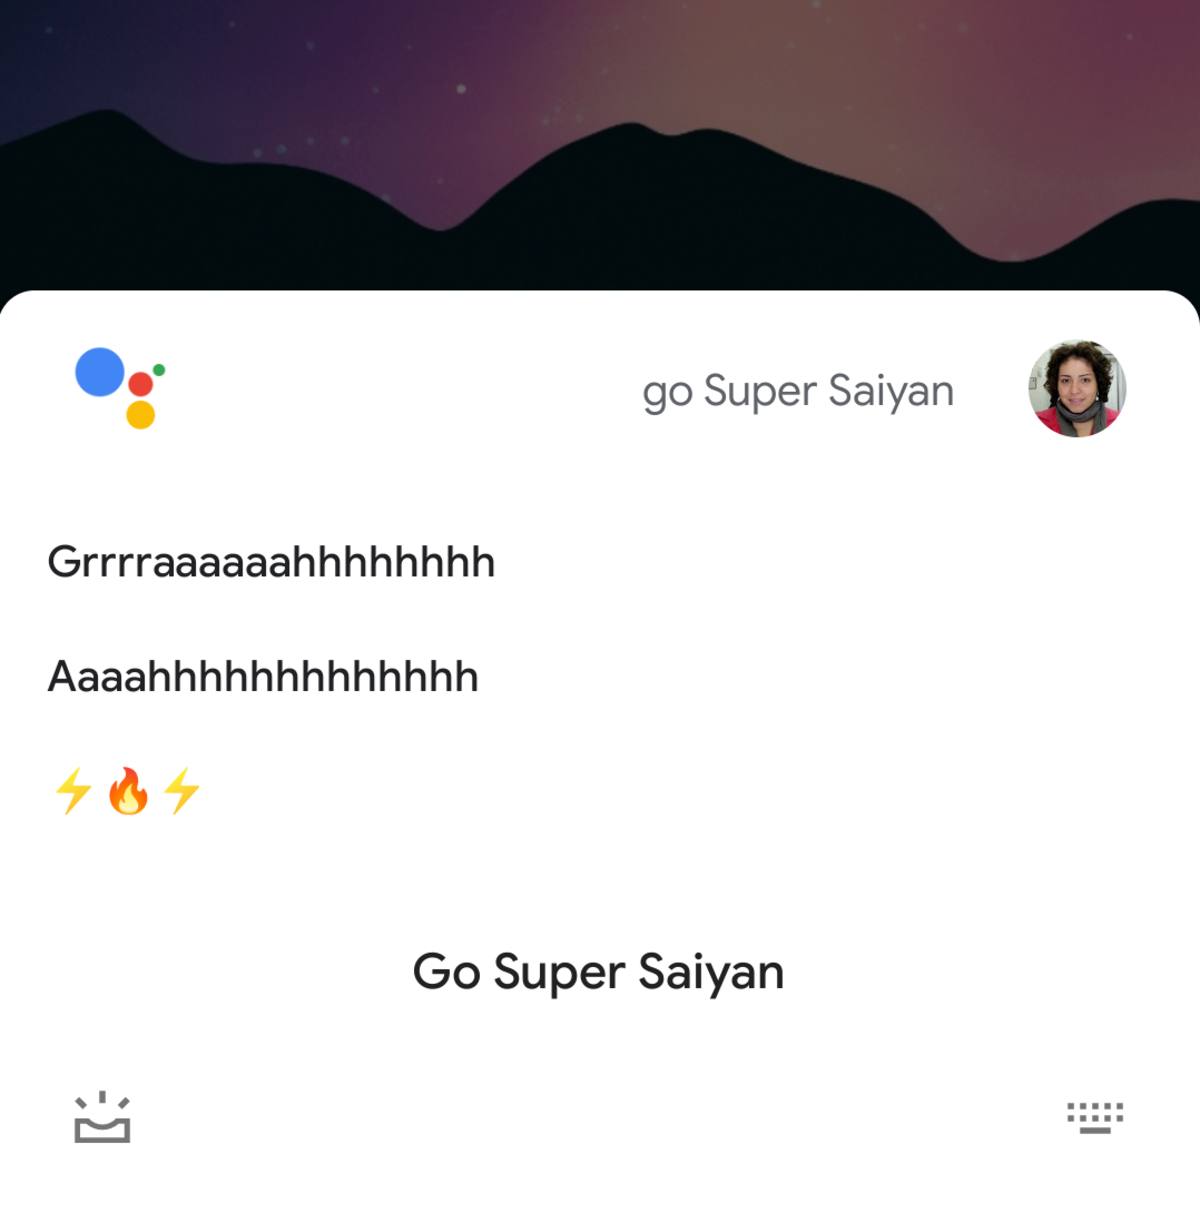 Google Assistant rinde homenaje a Dragon Ball con un huevo de pascua que imita los sonidos de la transformación en Super Saiyan